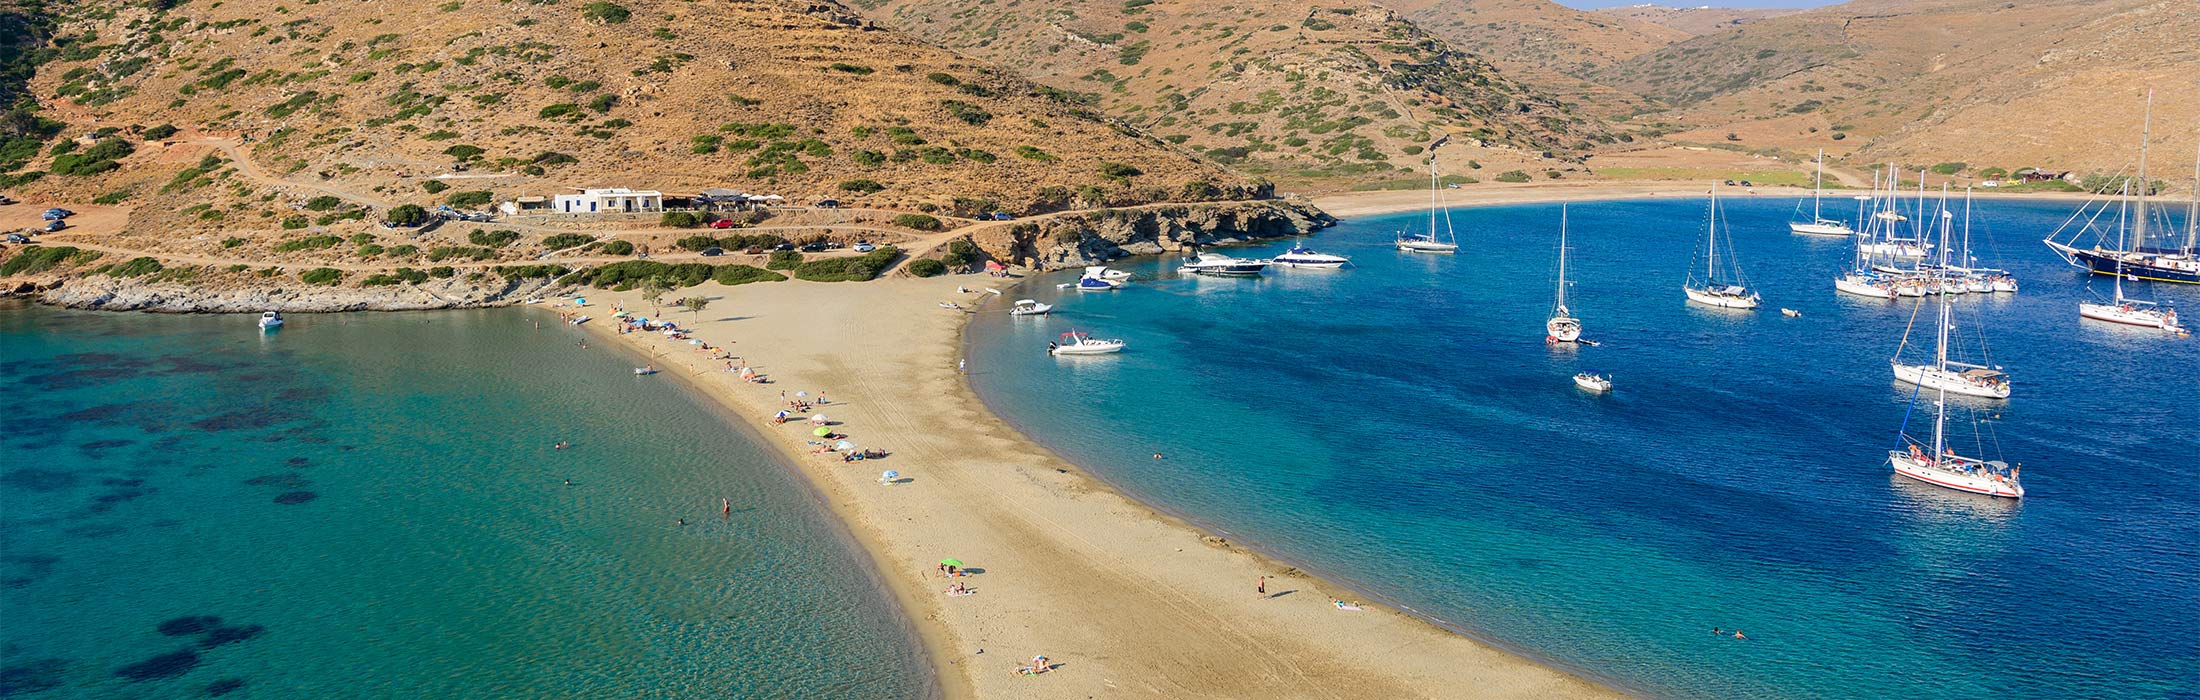 top yacht charter destinations mediterranean greece cyclades kythnos main slider 1